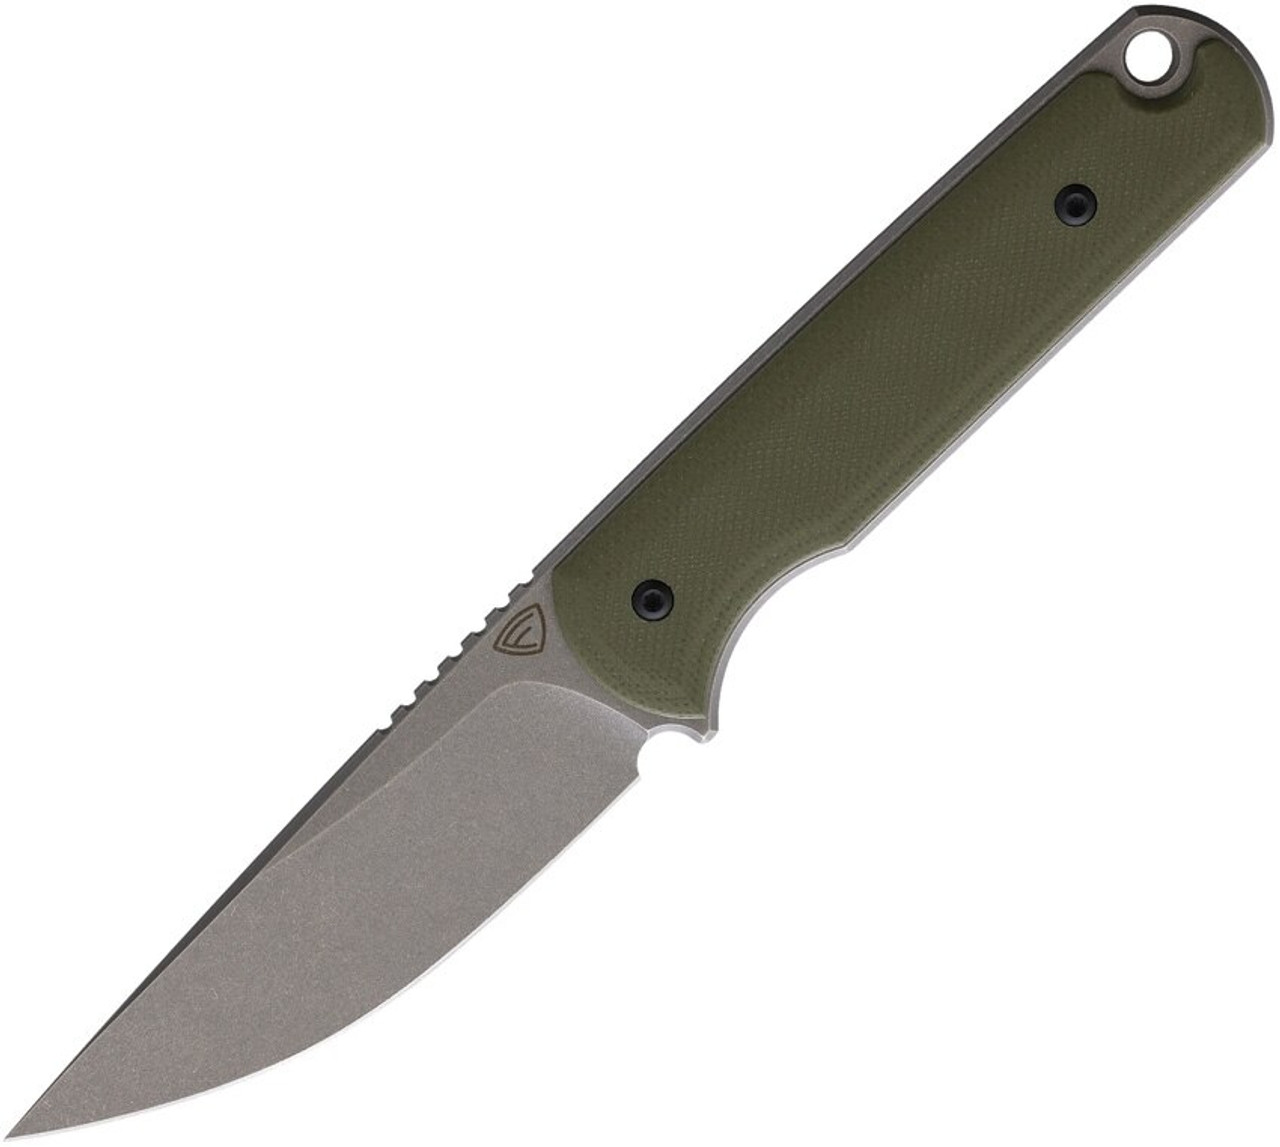 Ferrum Forge Knife Works Lackey Fixed Blade FF0029CR, 2.8" 9Cr18MoV Stonewashed Blade, OD Green G-10 Handle, Kydex Belt Sheath